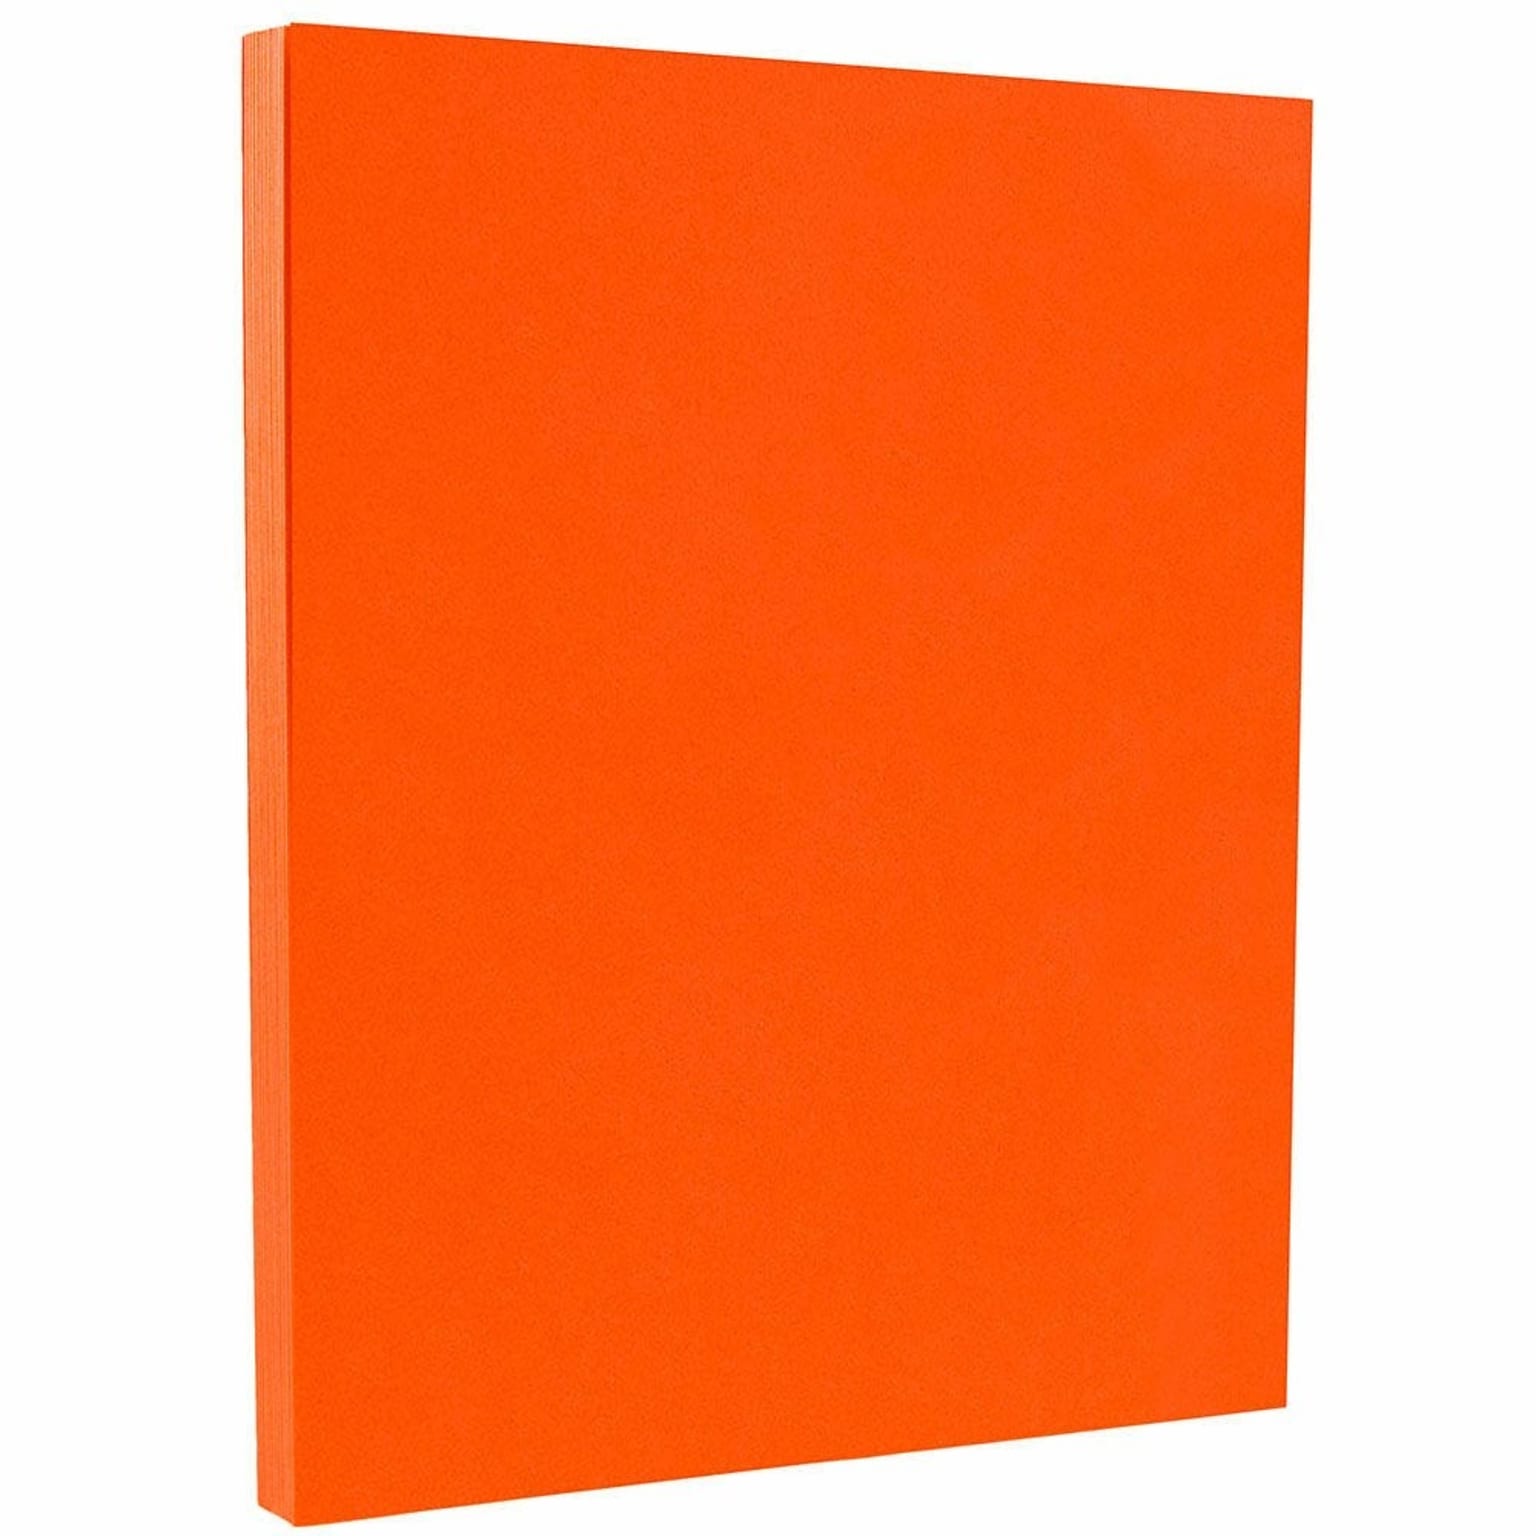 JAM PAPER 8.5 x 11 Color Cardstock, 65lb, Orange, 100/pack  (1033879G)